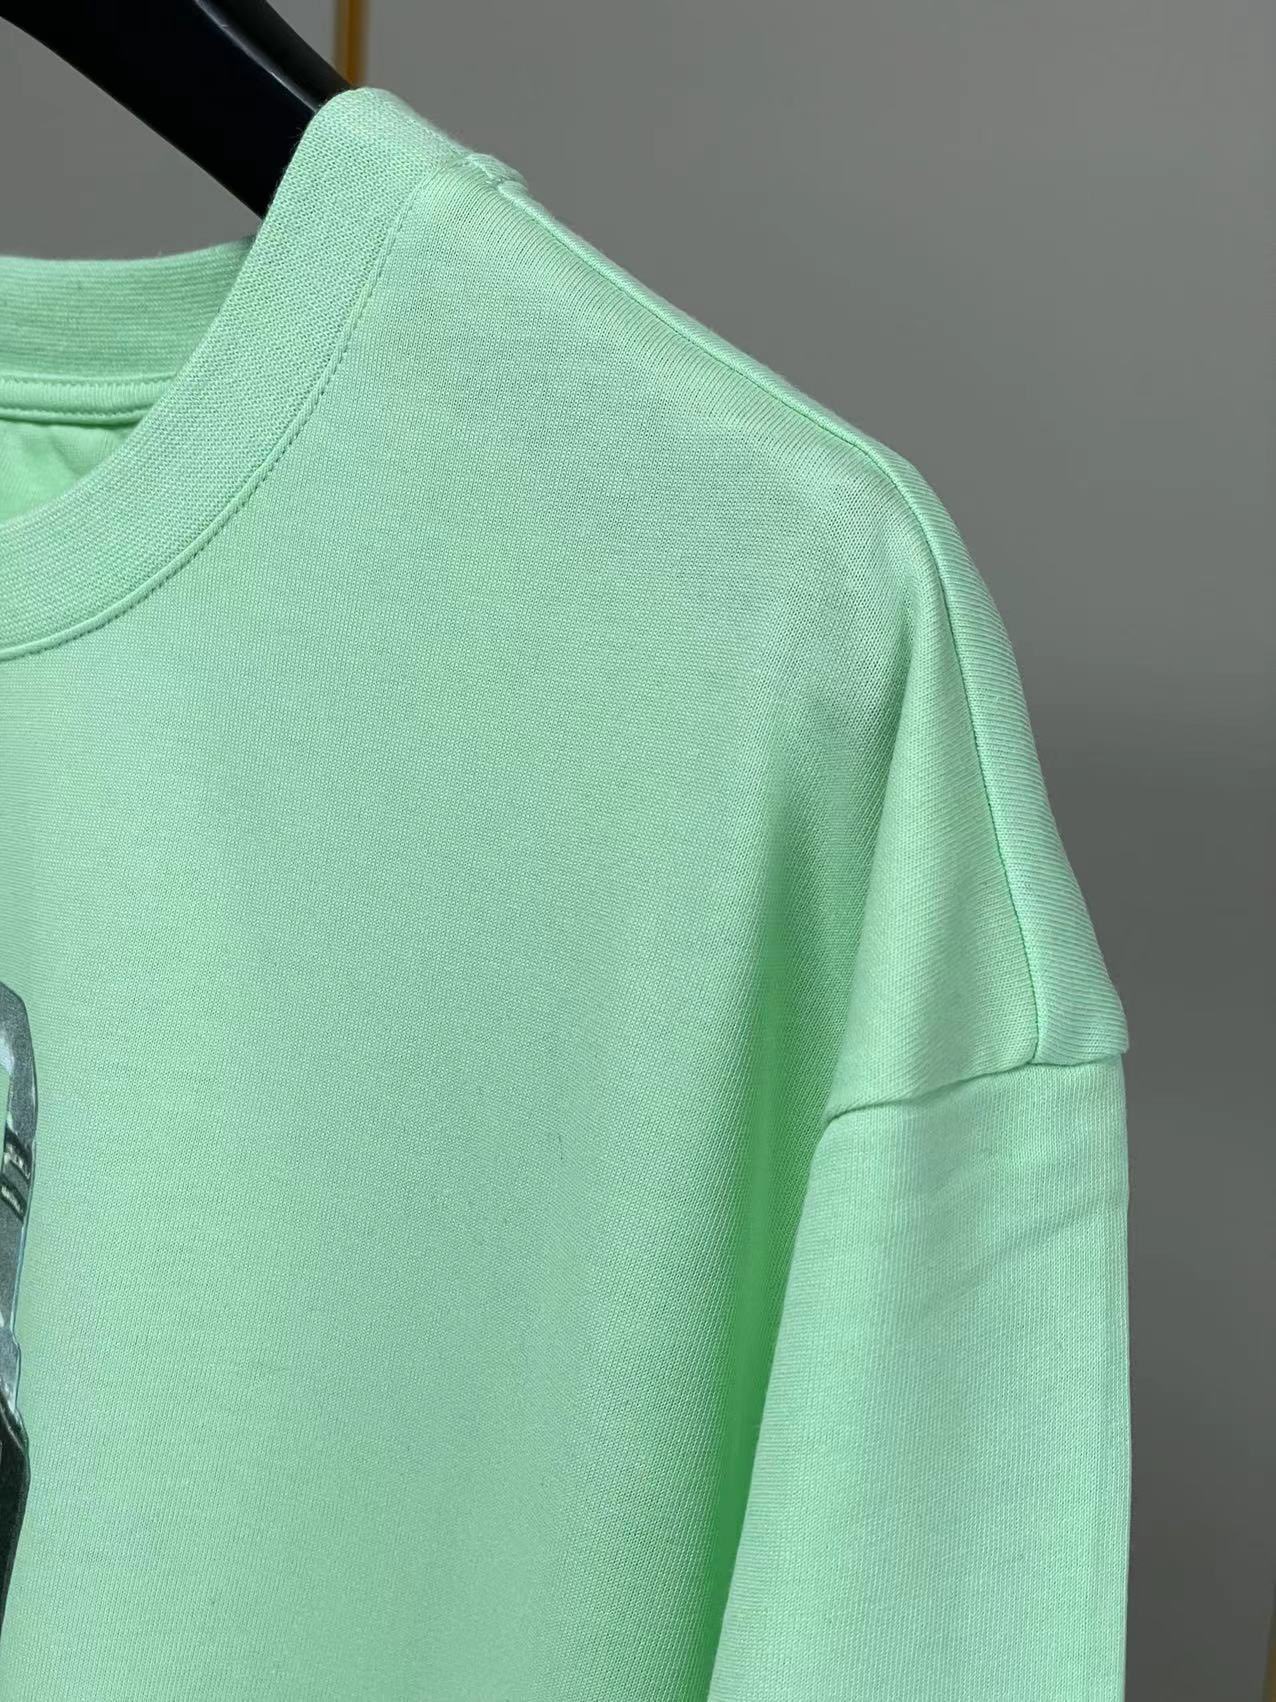 ジバンシィtシャツ激安通販 純綿 短袖 トップス ファッション ロックプリント 柔らかい 大販売 2色可選 グリーン_8